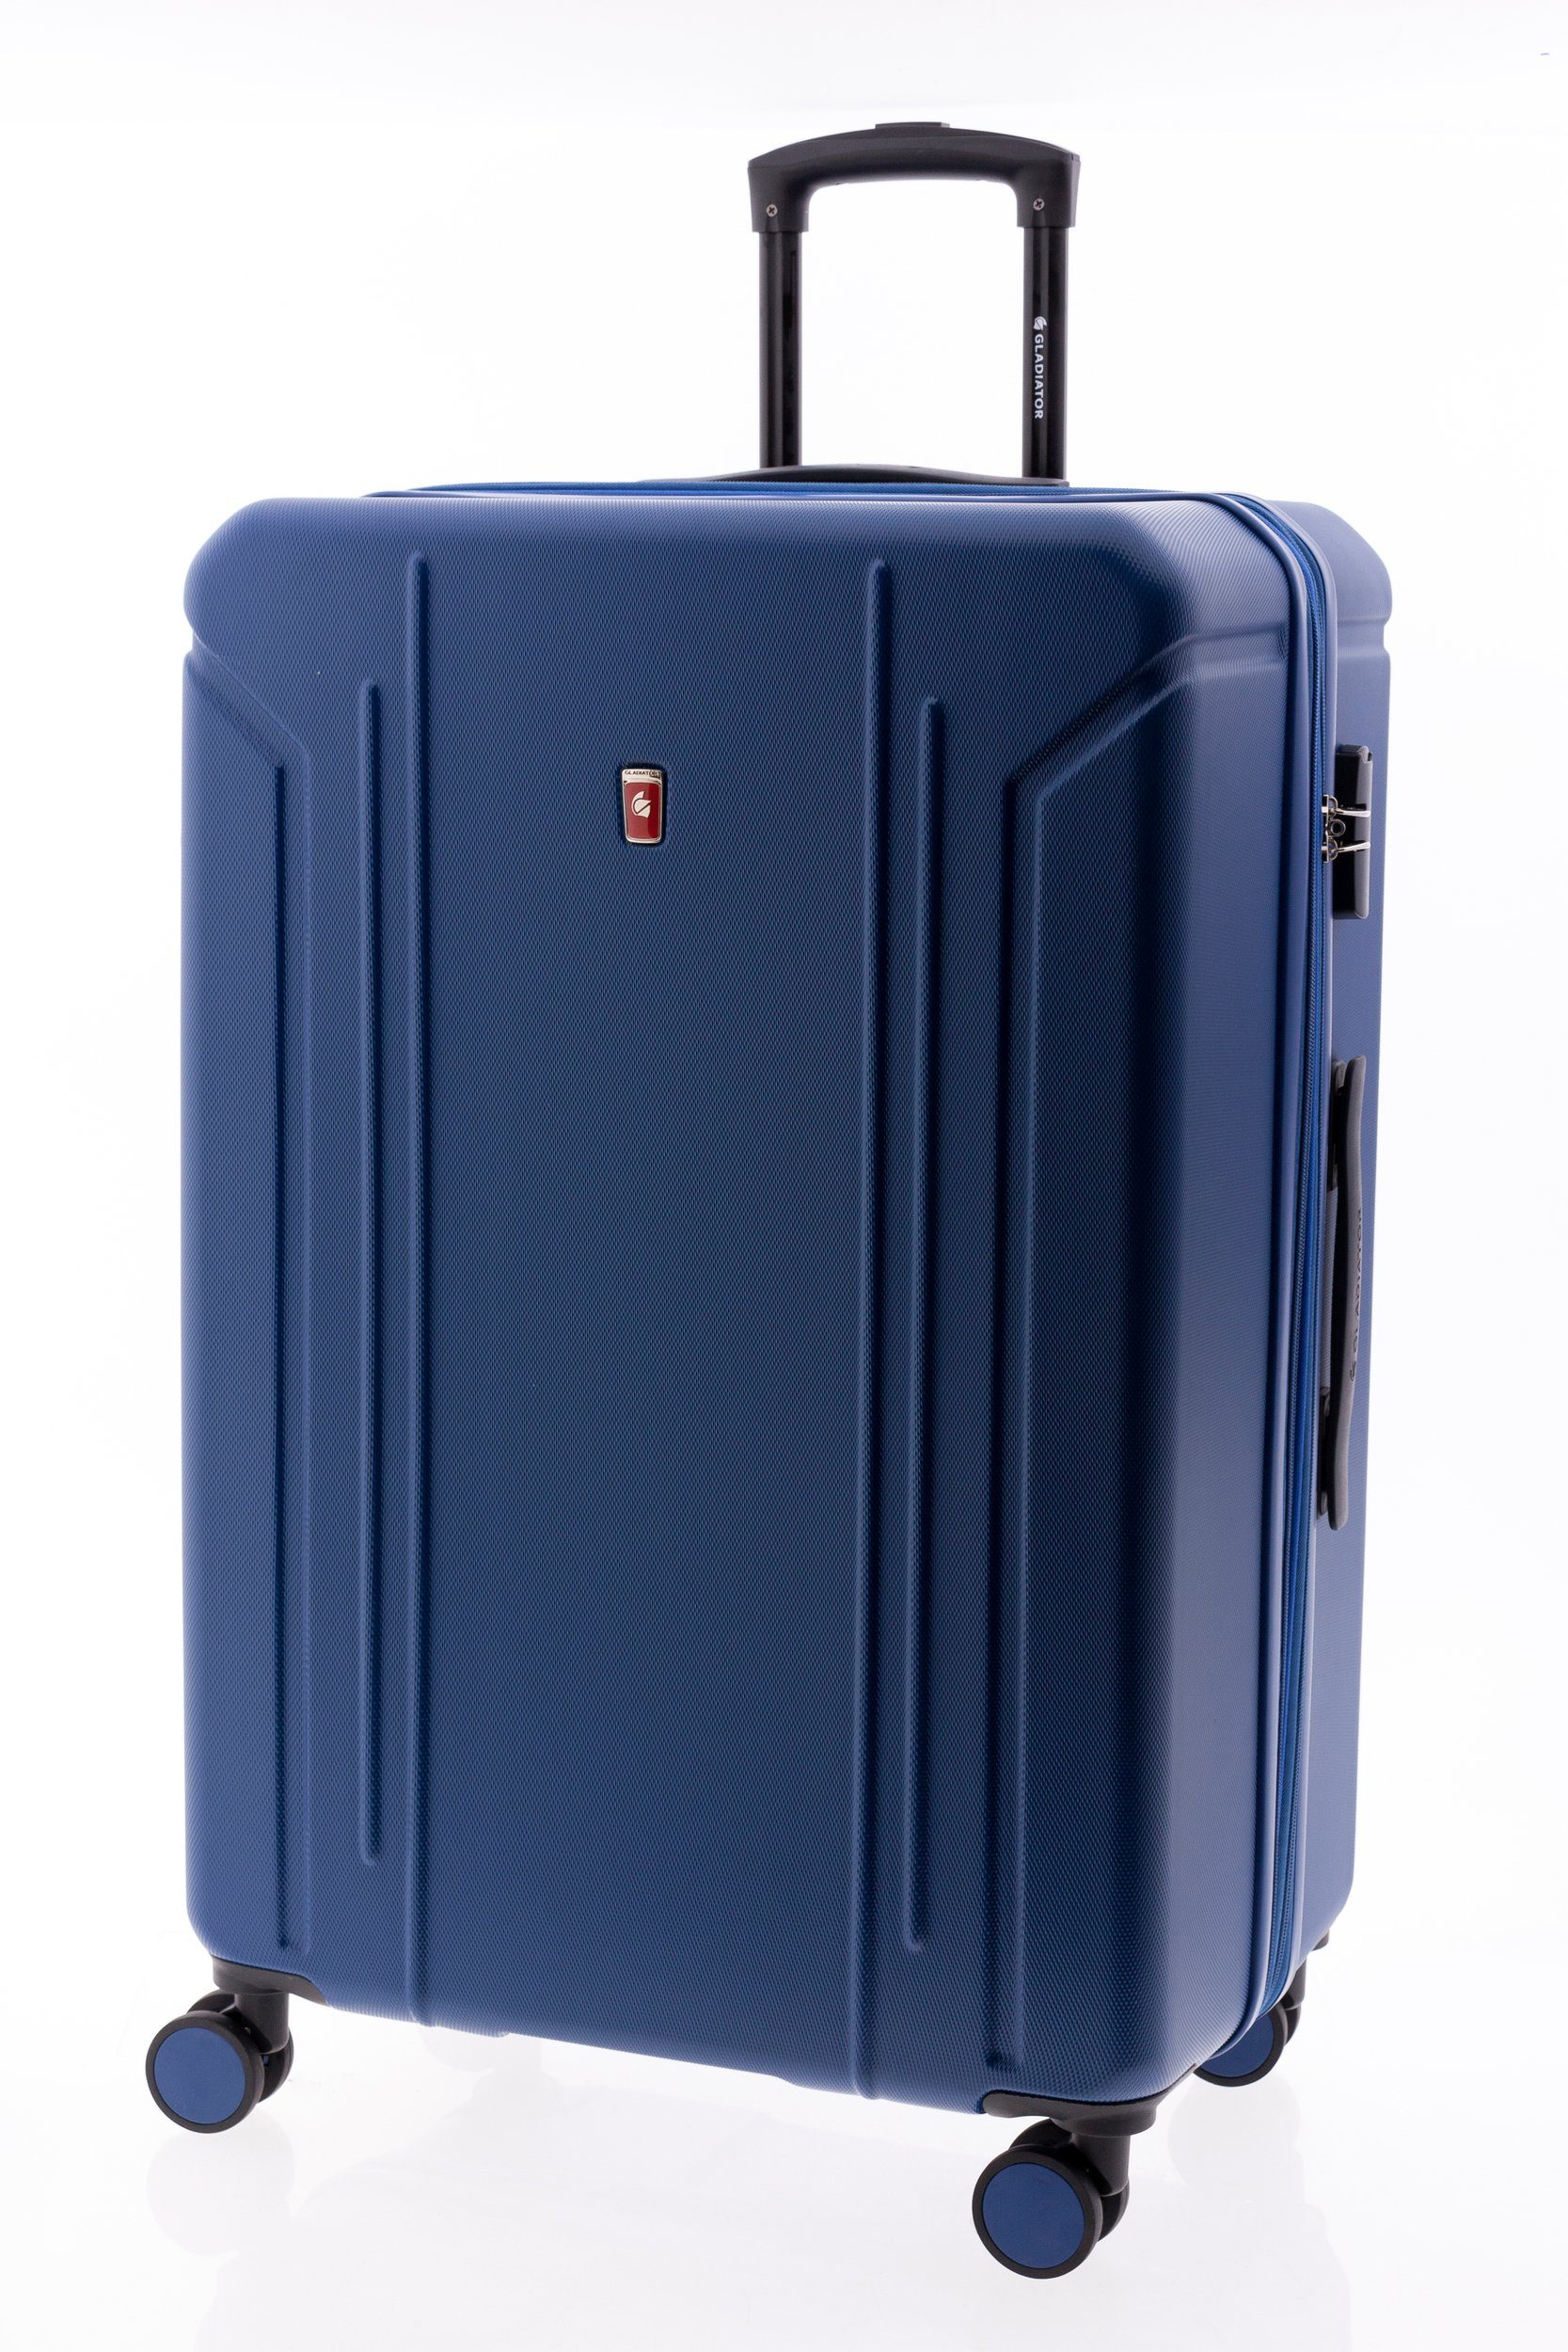 GLADIATOR Hartschalen-Trolley - Koffer 77 cm, 4 Rollen, Dehnfalte, div. Farben blau